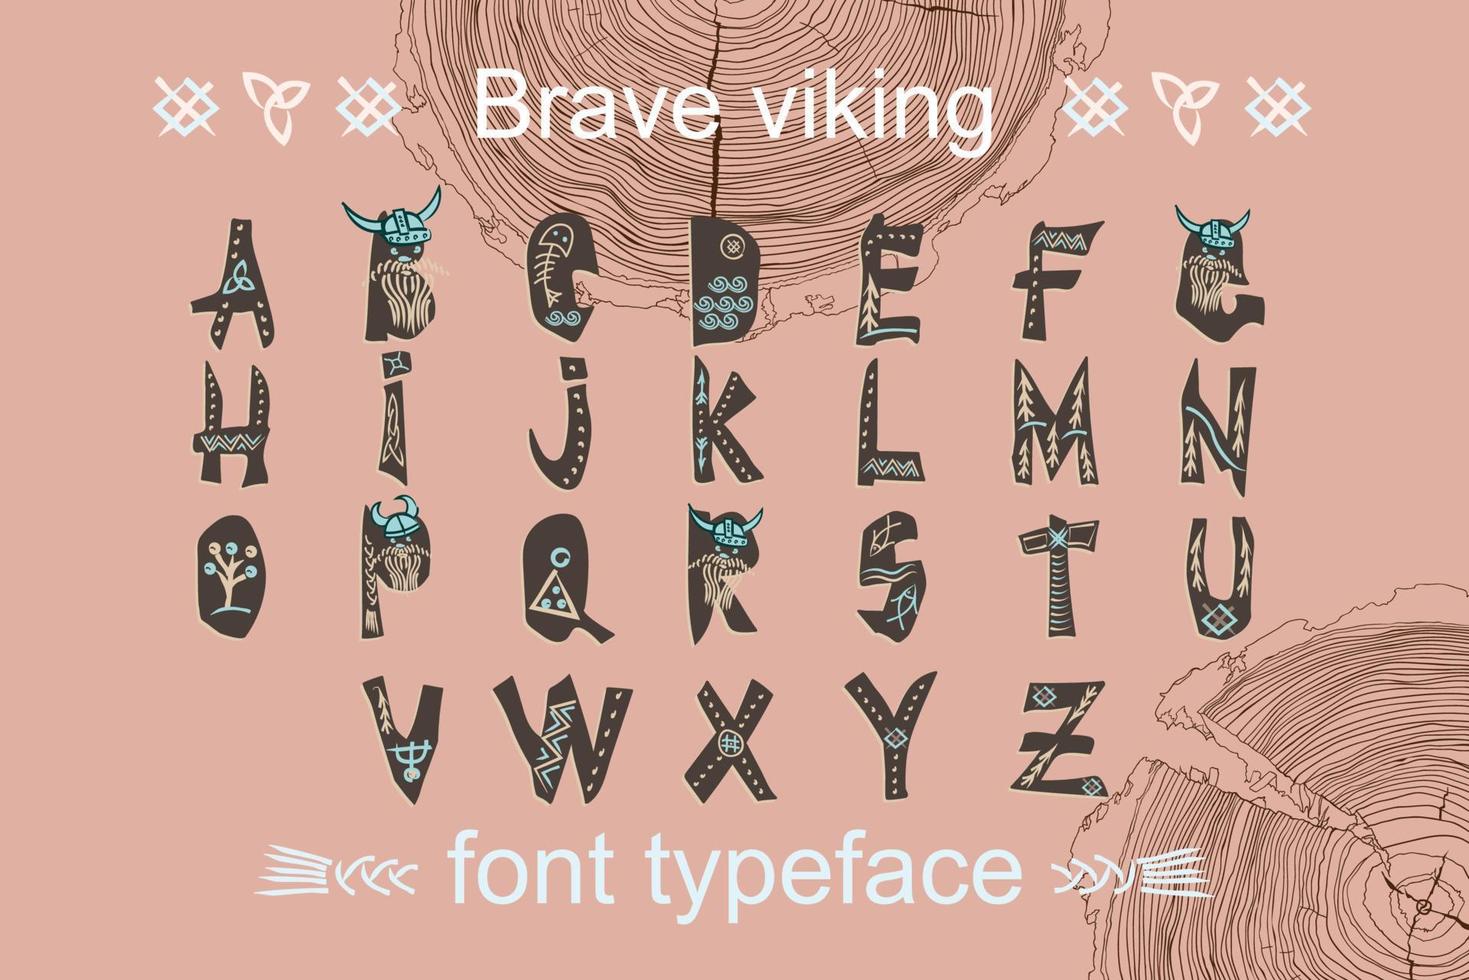 modern kleur alfabet in papier besnoeiing stijl. typografie kinderen viking thema leuze of poster. Scandinavisch thema voor Super goed ontwerp, kinderen affiches, t-shirt, doopvont patroon vector illustraties